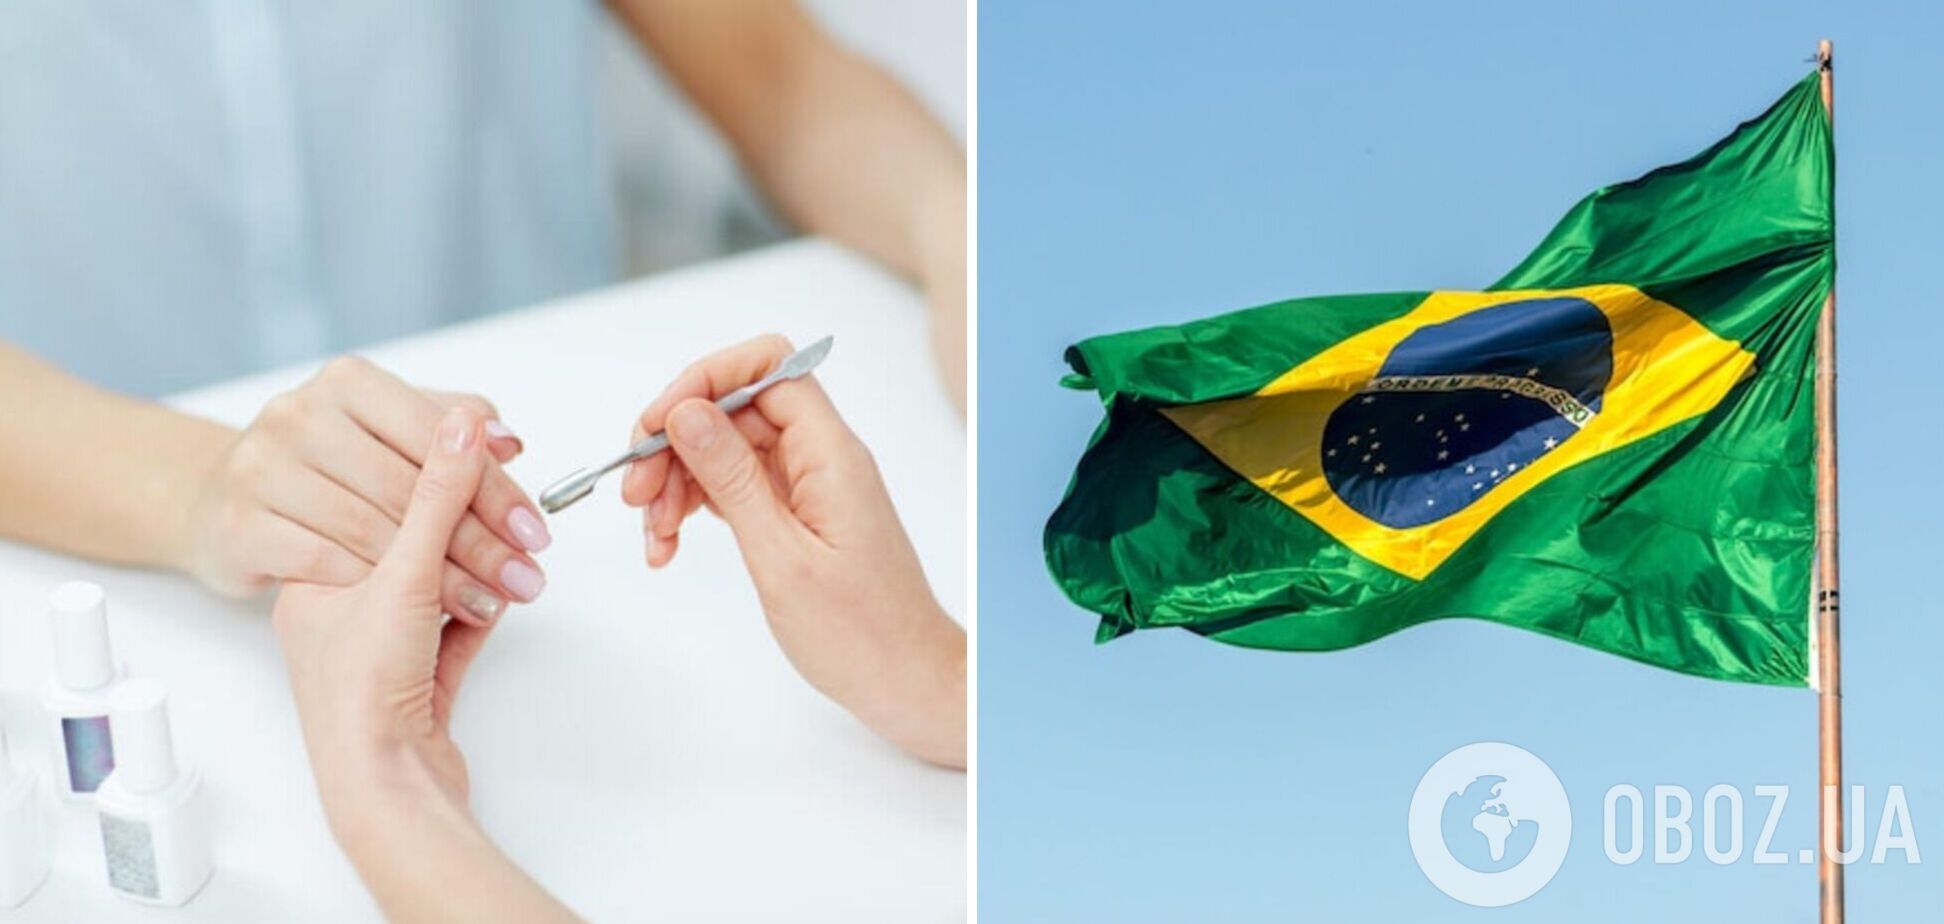 Бразильський манікюр набирає популярності в мережі: в чому його особливість